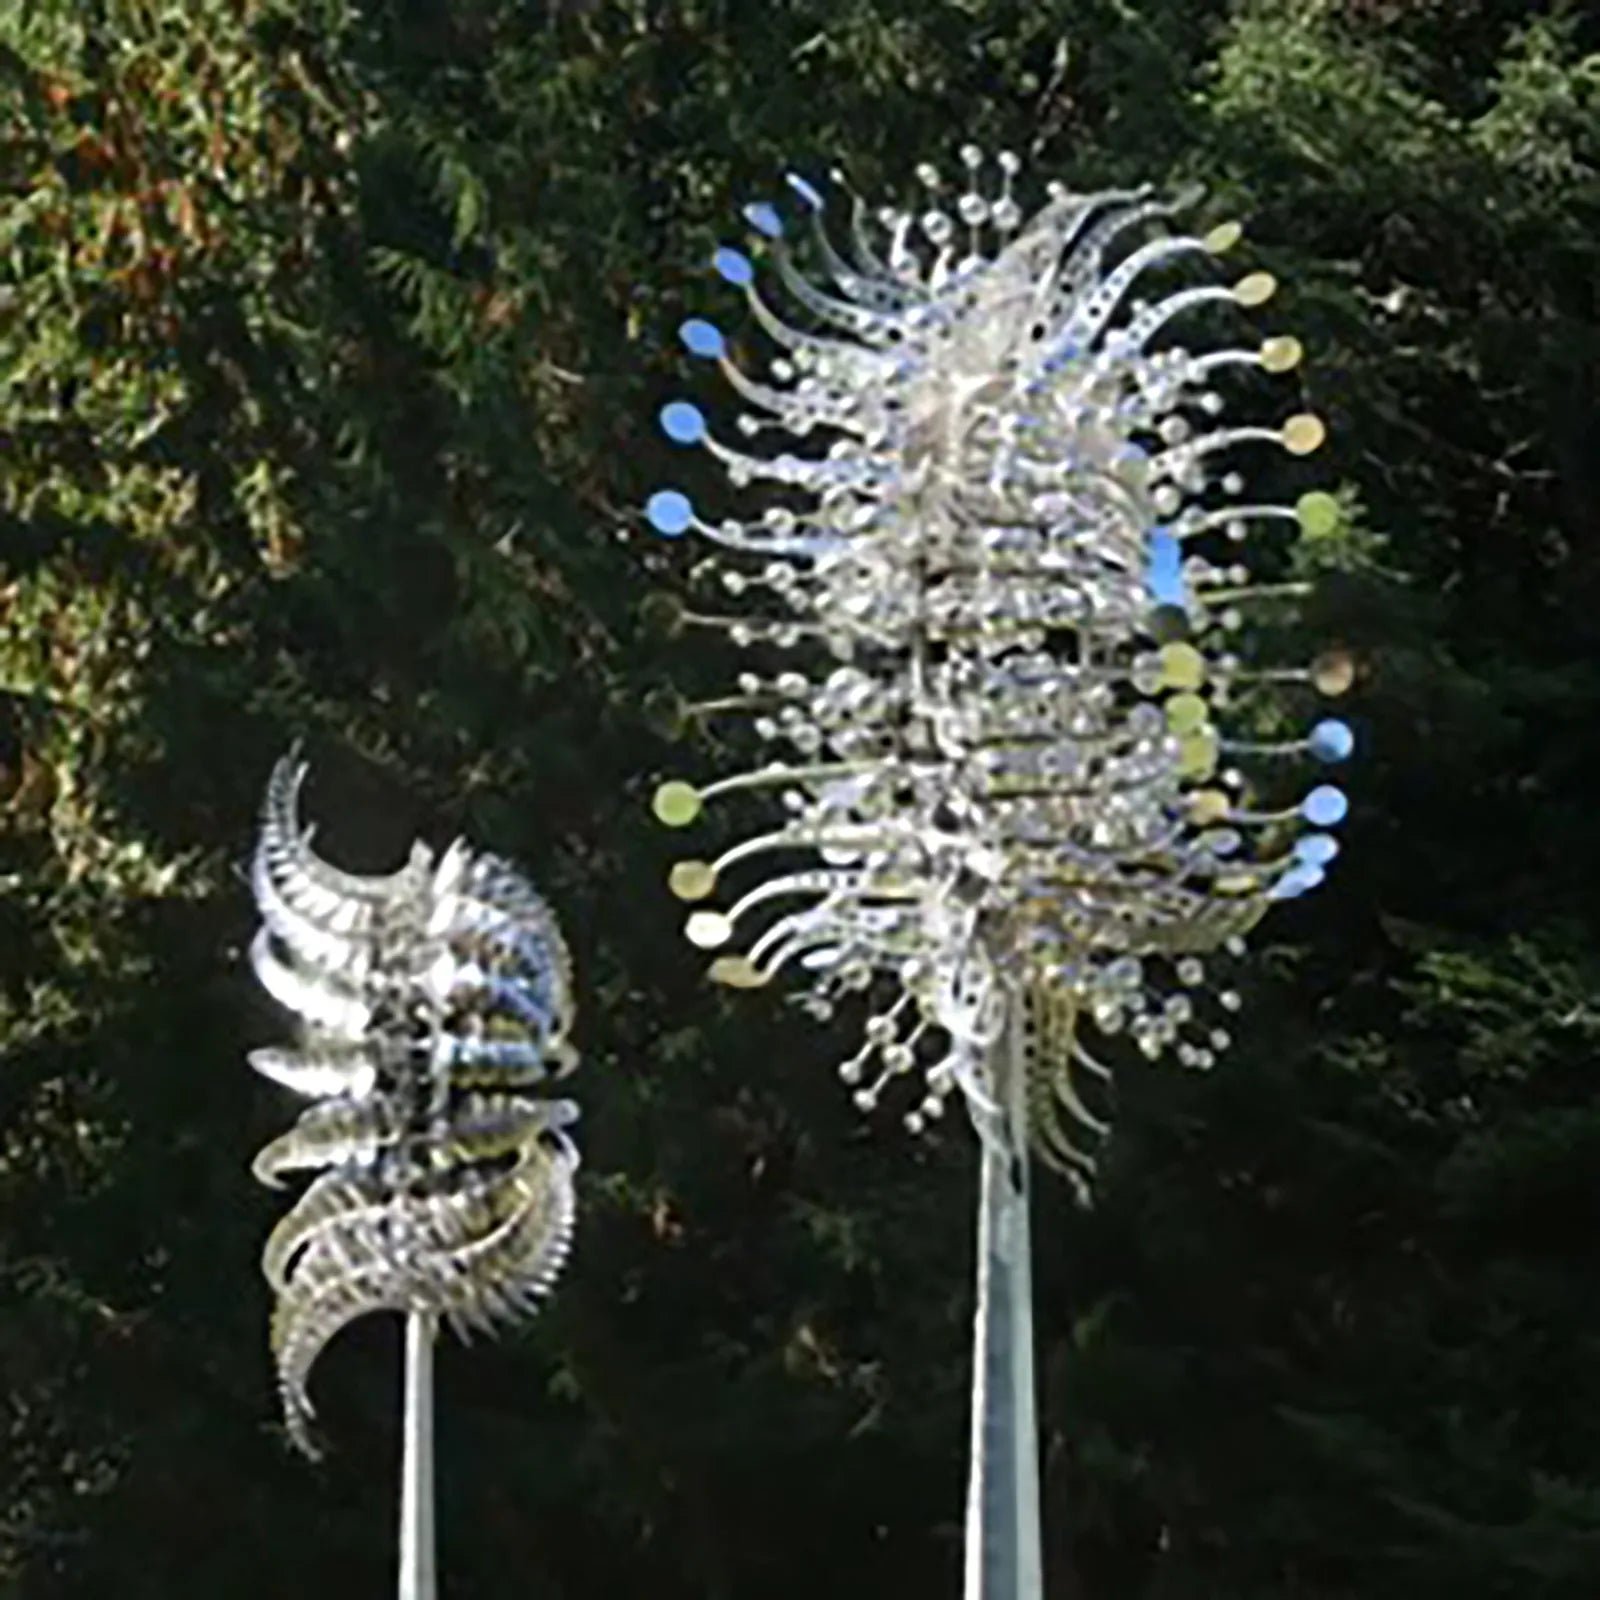 فناء حديقة الحديقة في الهواء الطلق الديكور فريدة من نوعها جامعي الرياح السحرية الحركية المعدنية طاحونة الدوار الشمسية الرياح بالطاقة الماسكات